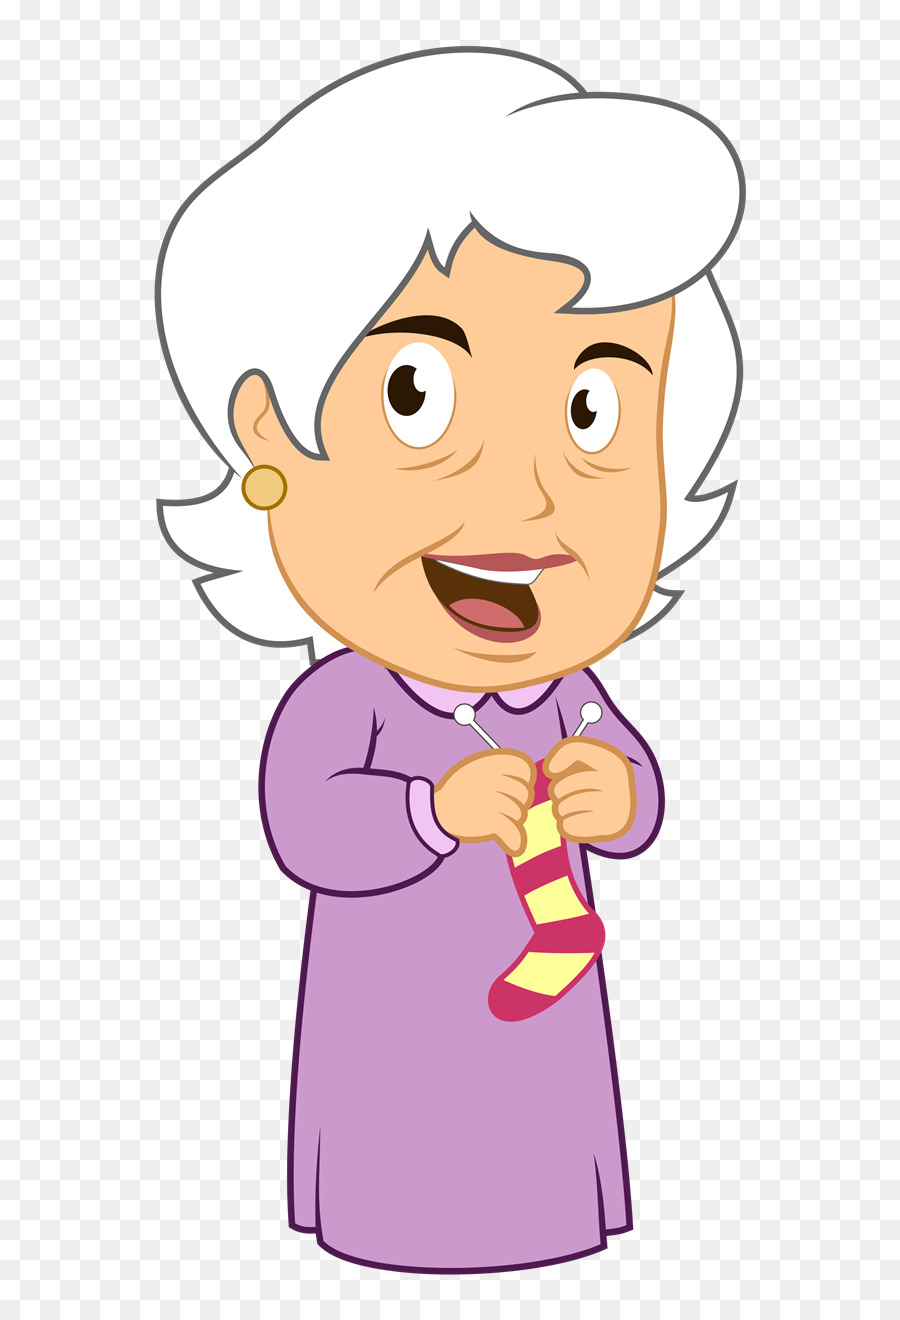 Angry grandmother